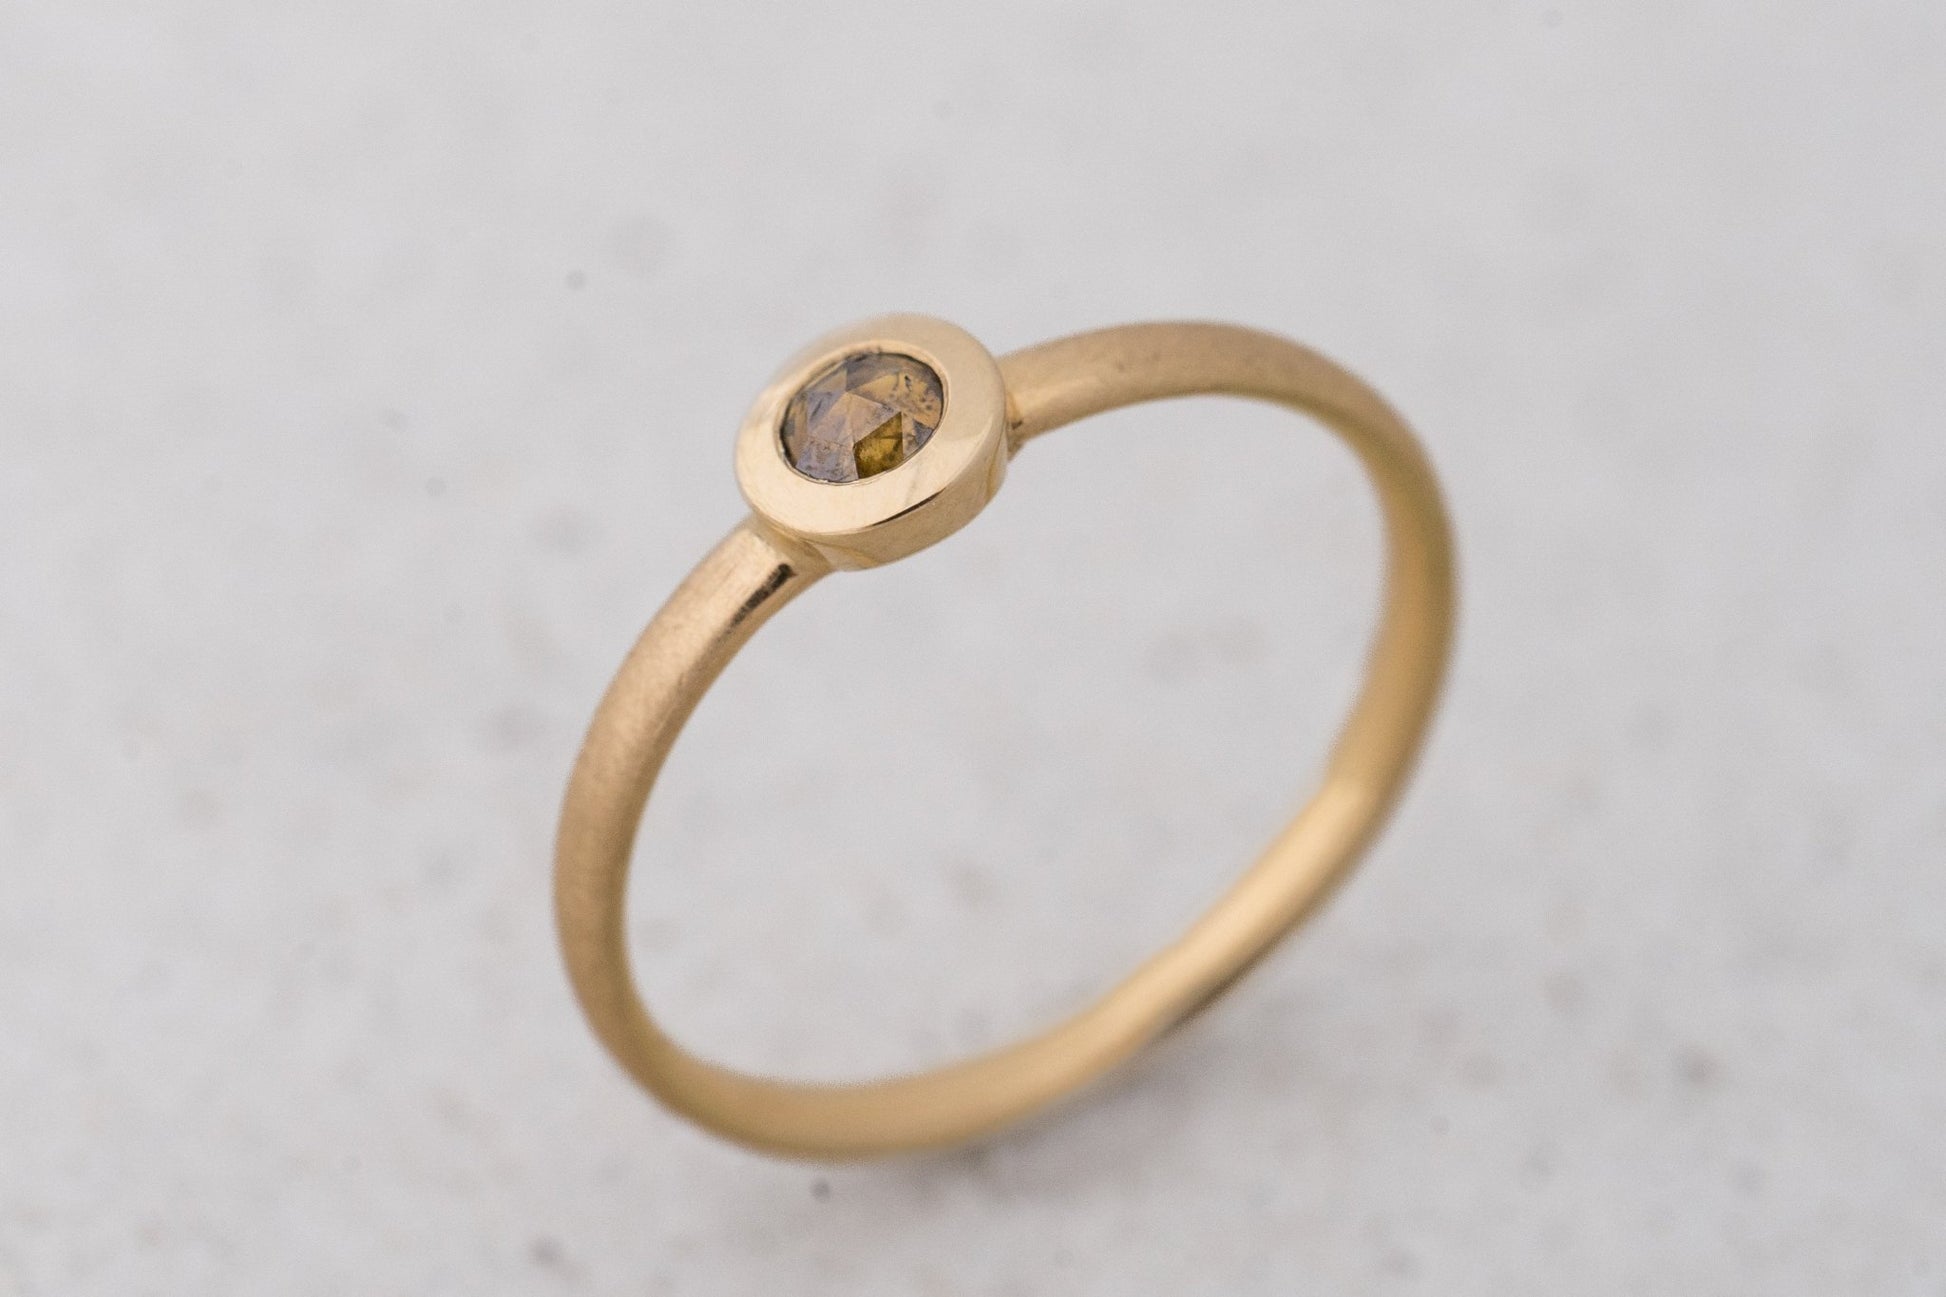 Antragsring Verlobungsring Außergewöhnlich mit einem braunen Diamanten im Rosenschliff - Goldschmiede Miret